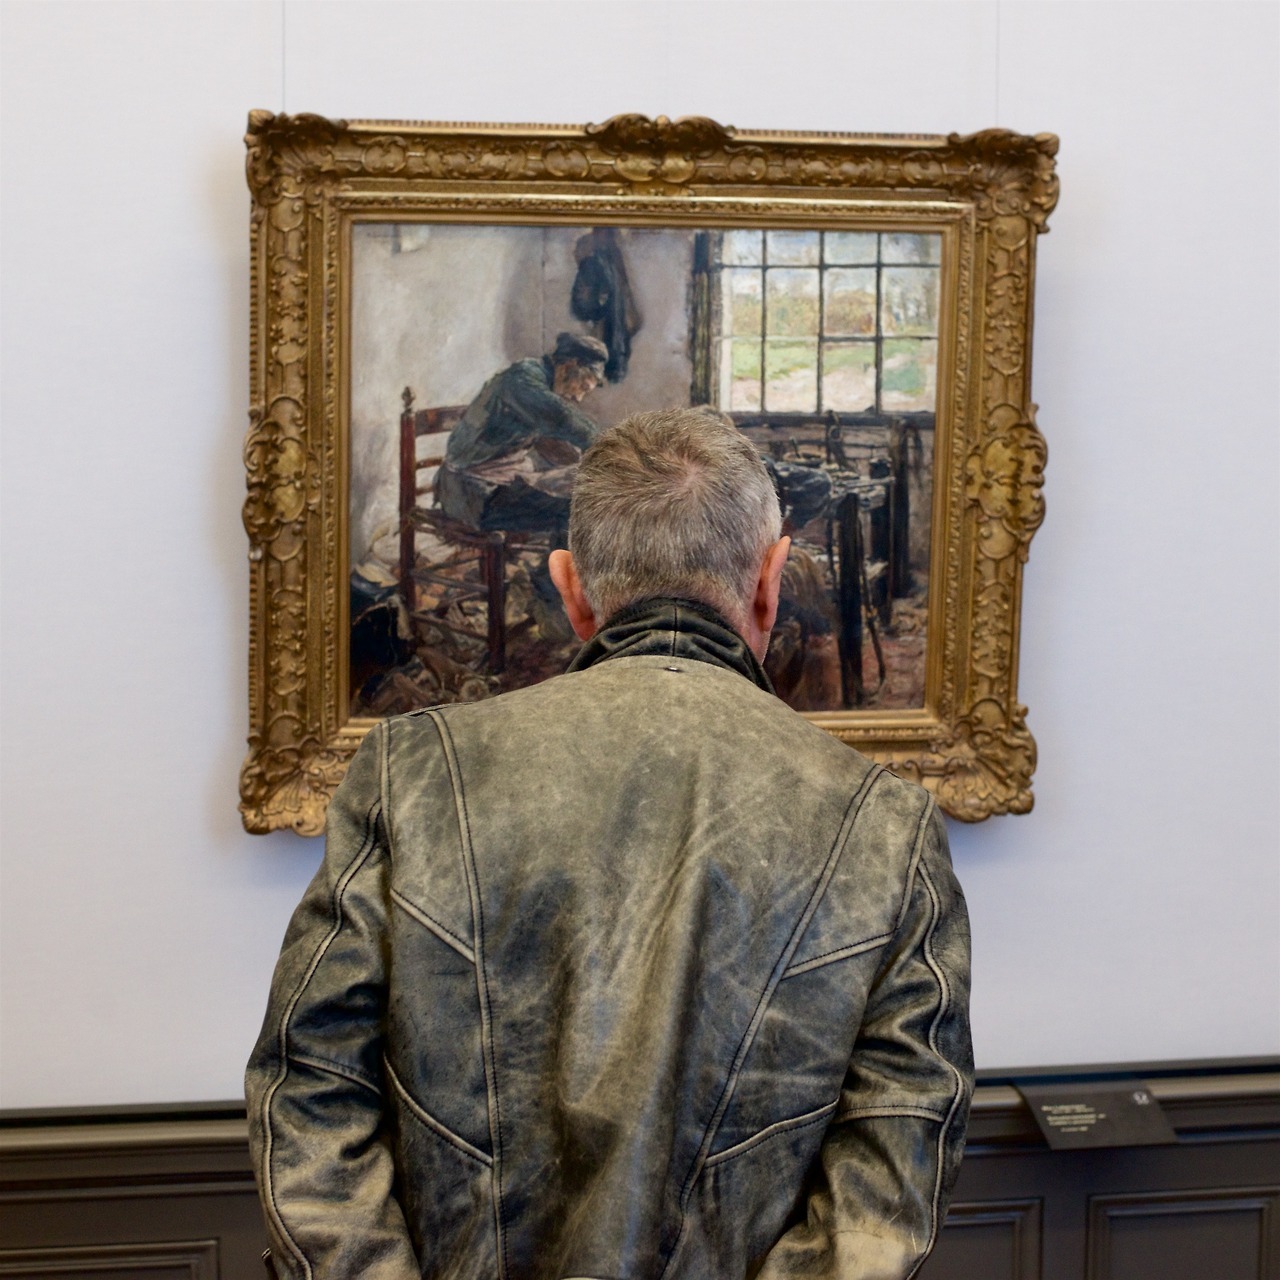 мужчина в кожаной куртке смотрит на мужчину в кожаной куртке на картине в музее